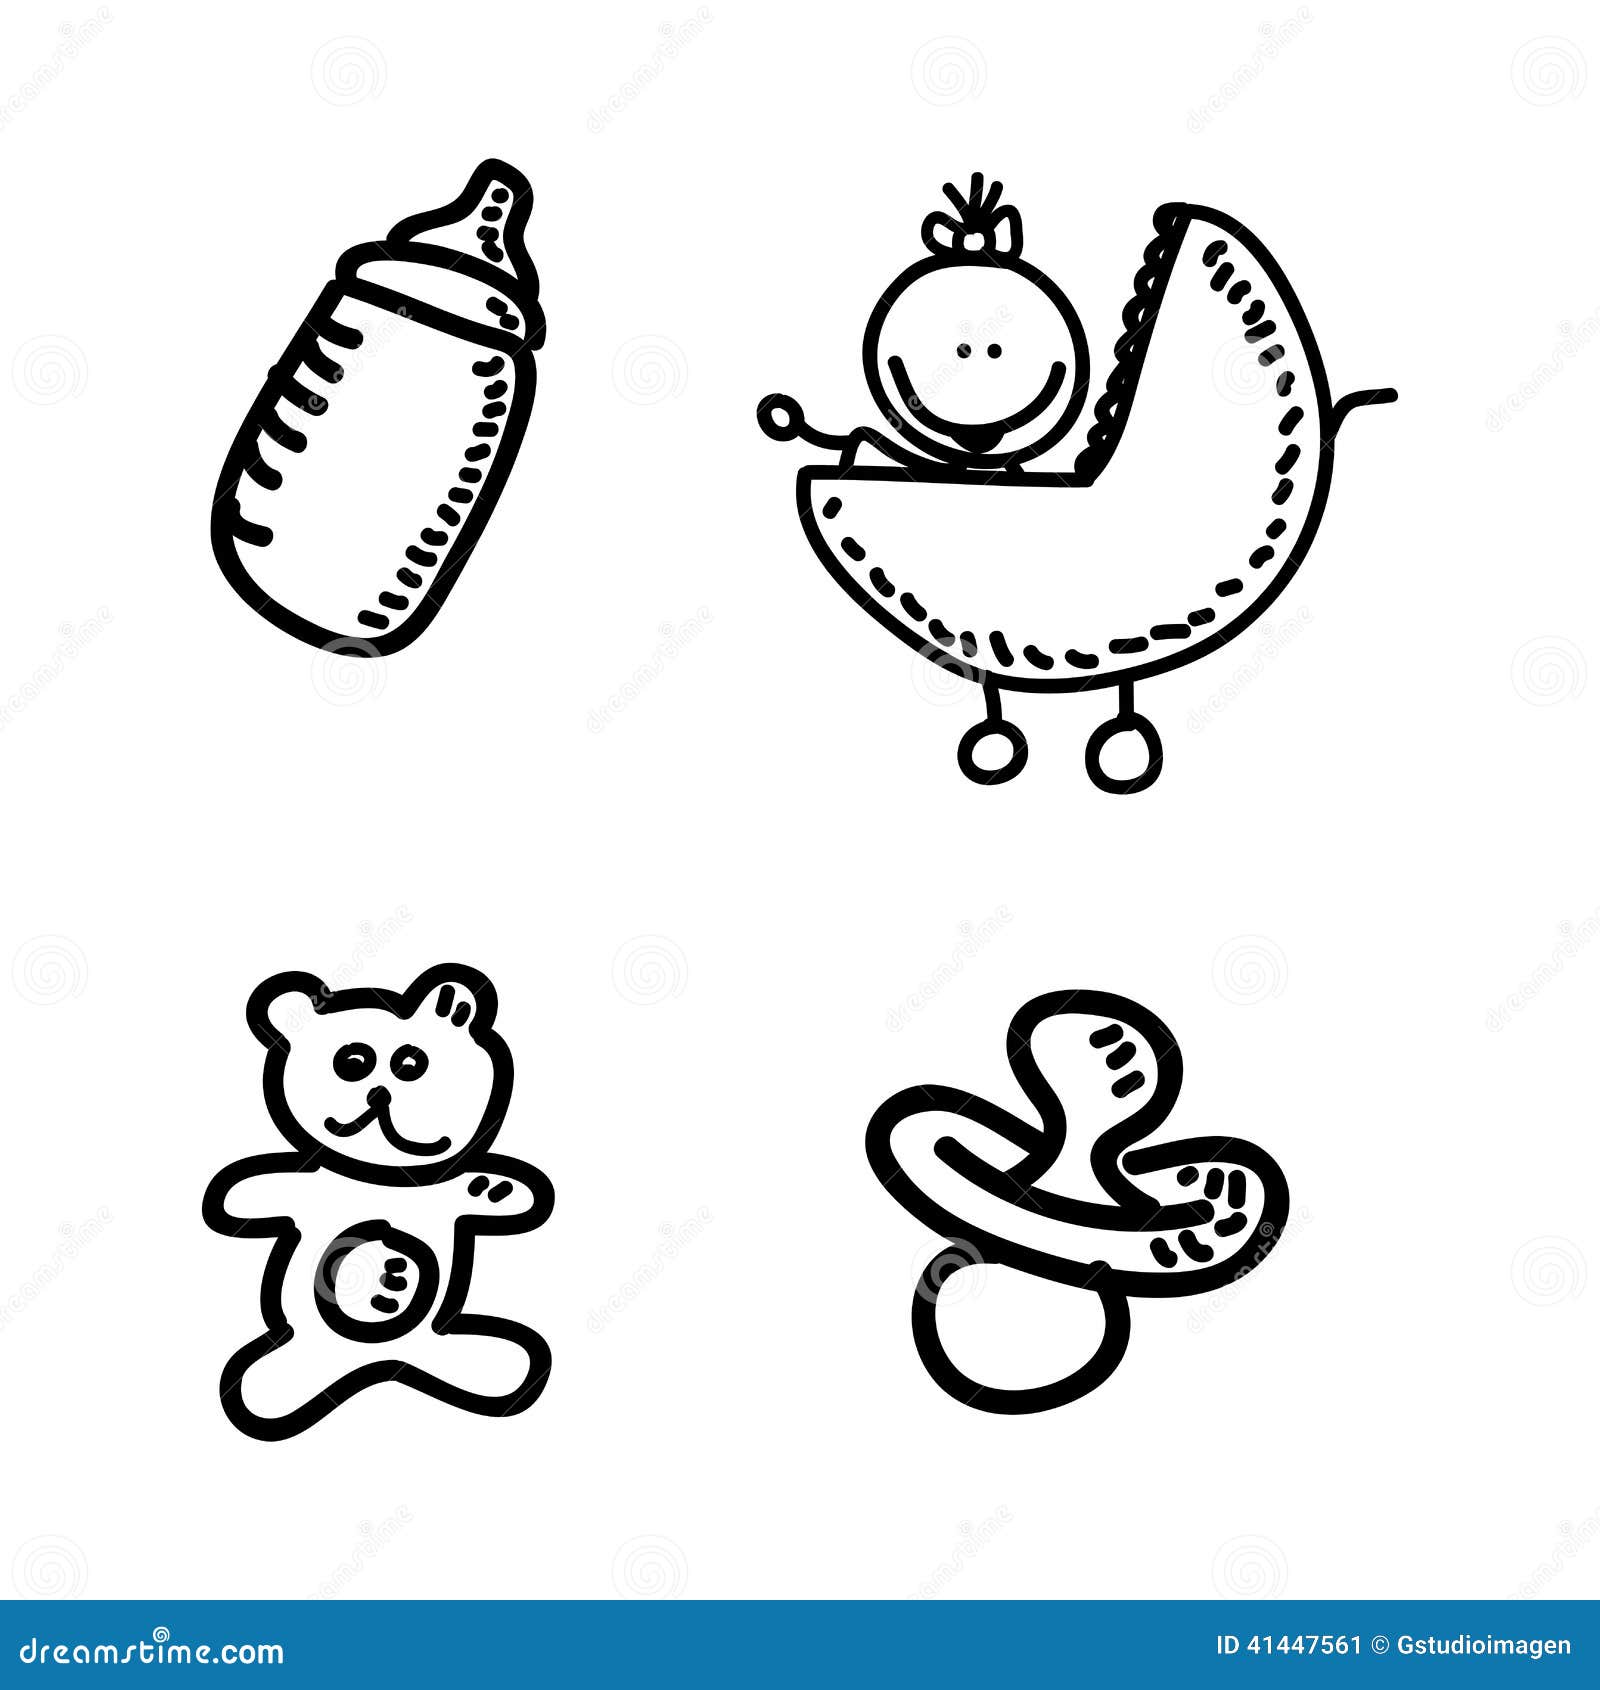 Kids design stock vector. Illustration of children, teddy - 41447561